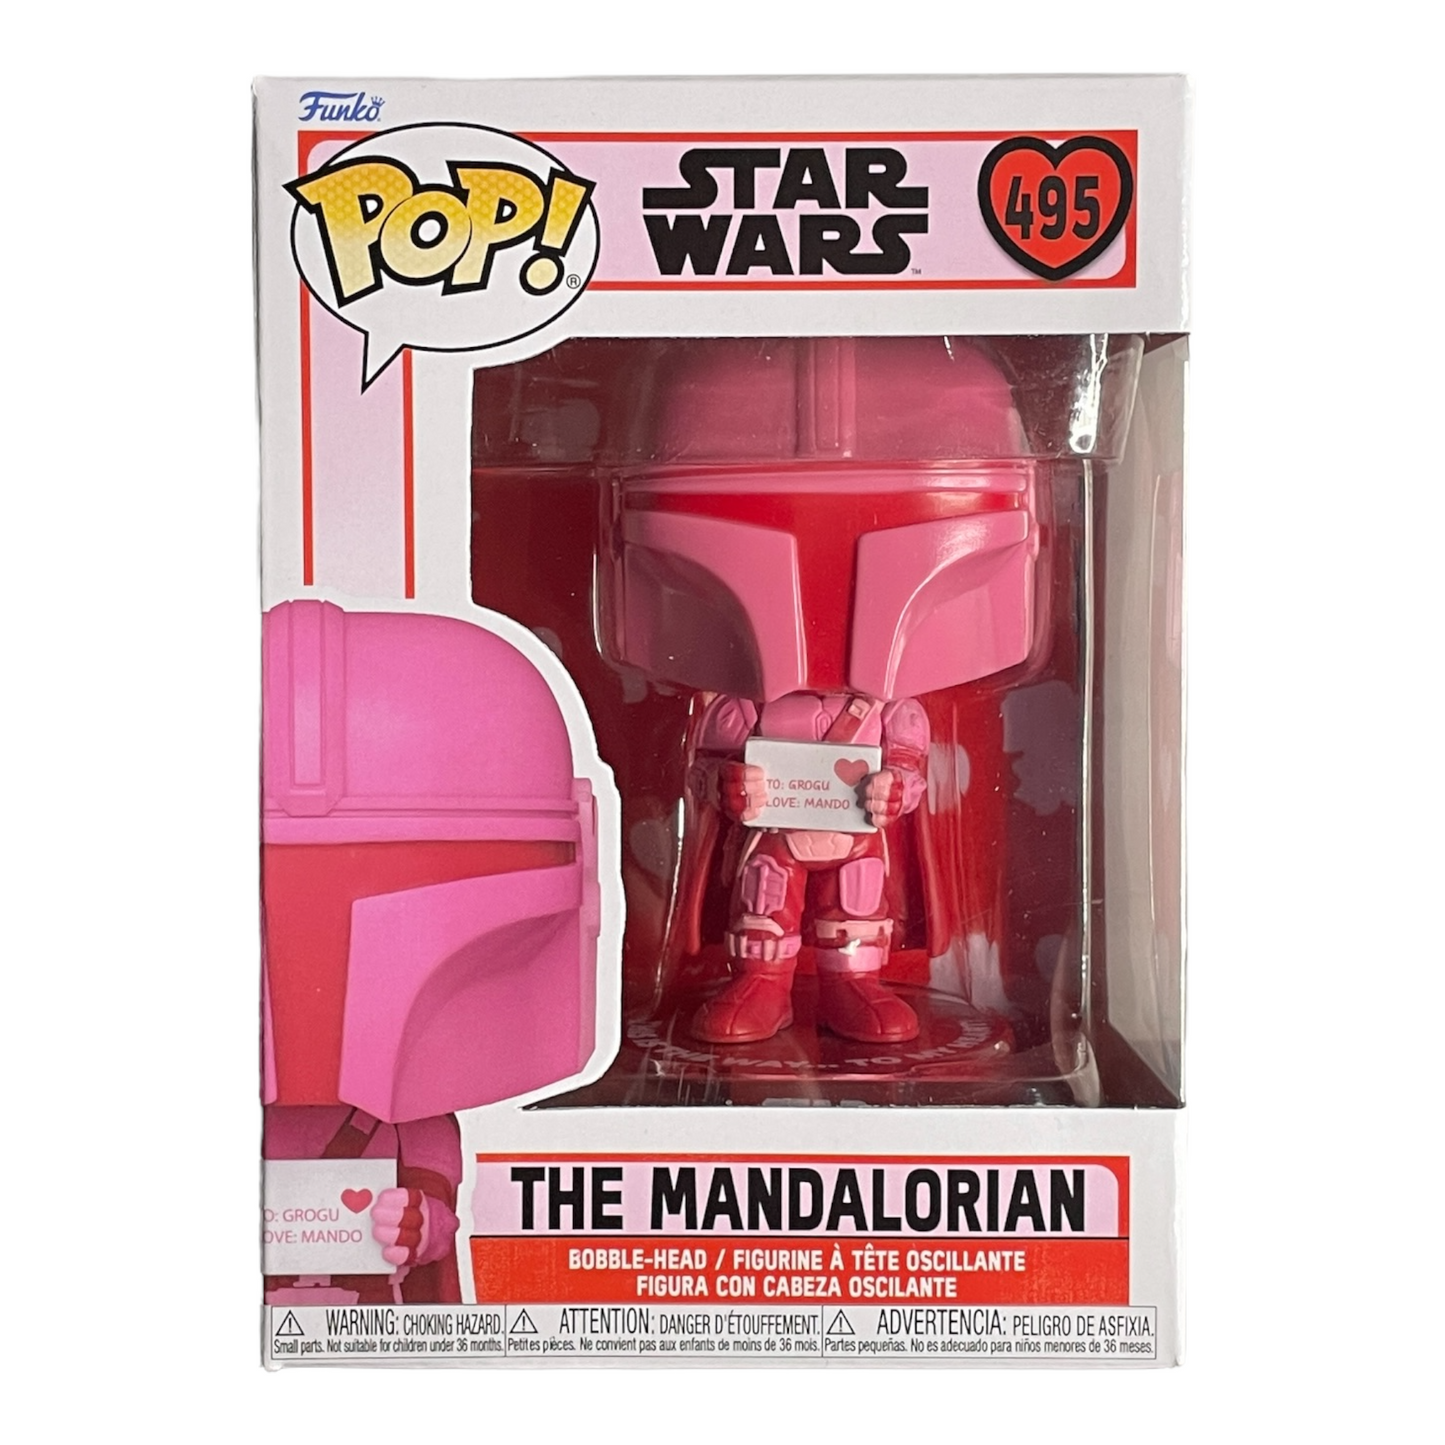 The Mandalorian #495